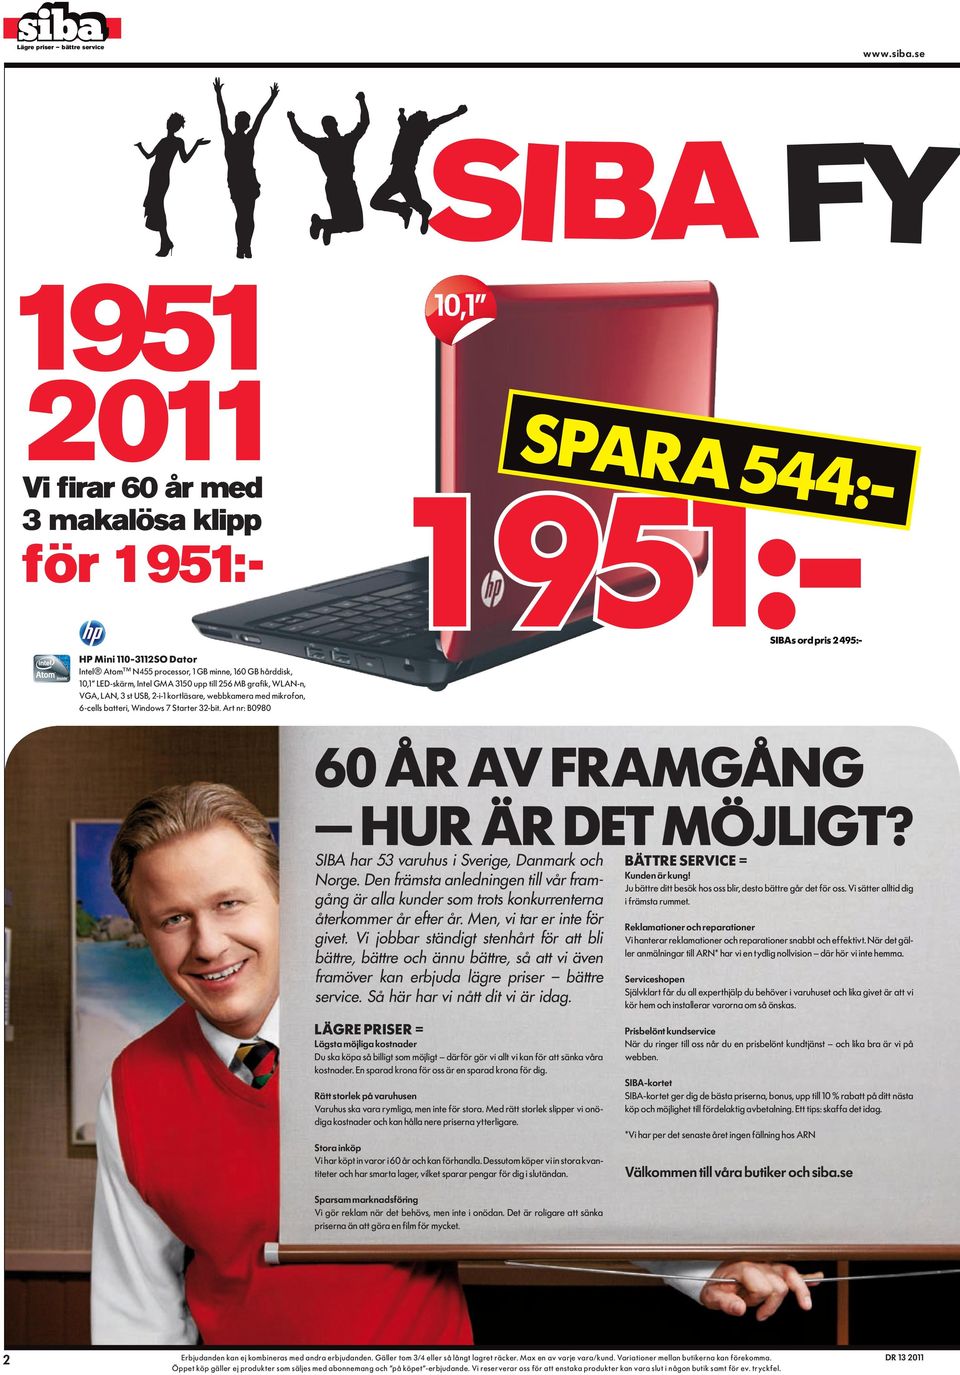 Art nr: B0980 60 år av framgång hur ÄR det möjligt? SIBA har 53 varuhus i Sverige, Danmark och Norge.